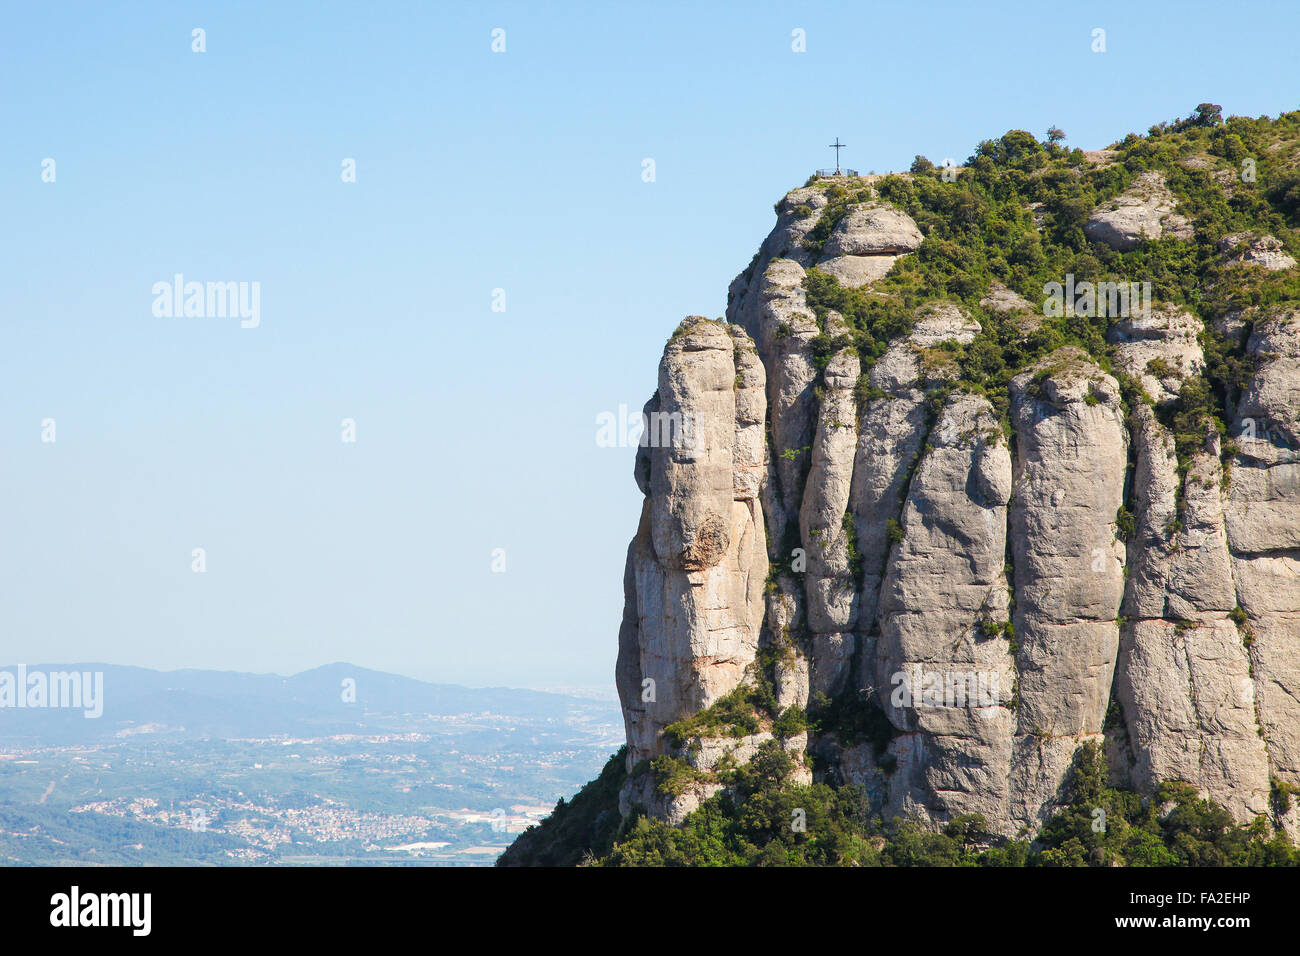 La montagne de Montserrat en Catalogne, Espagne Banque D'Images